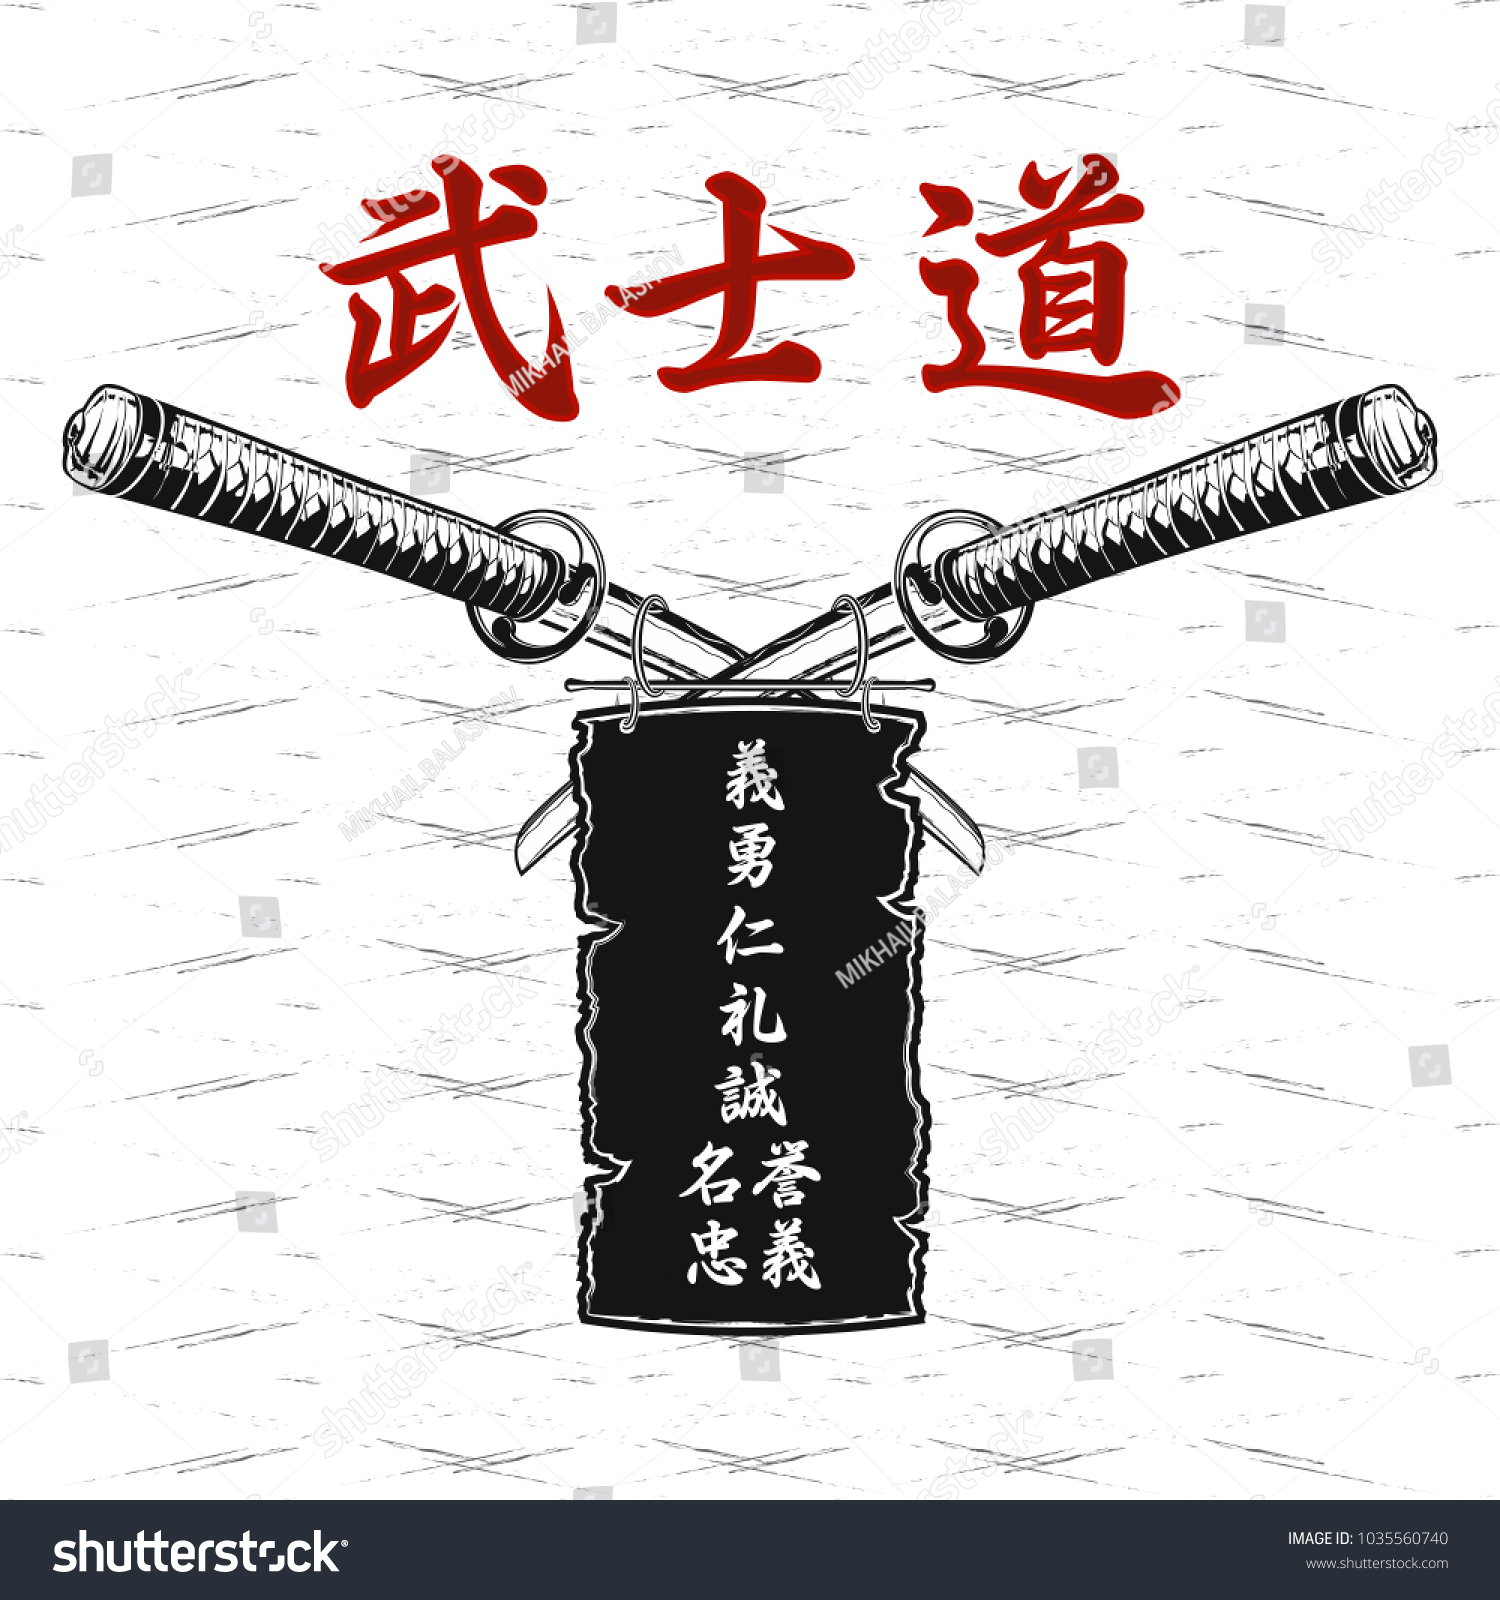 Надписи на китайских мечах